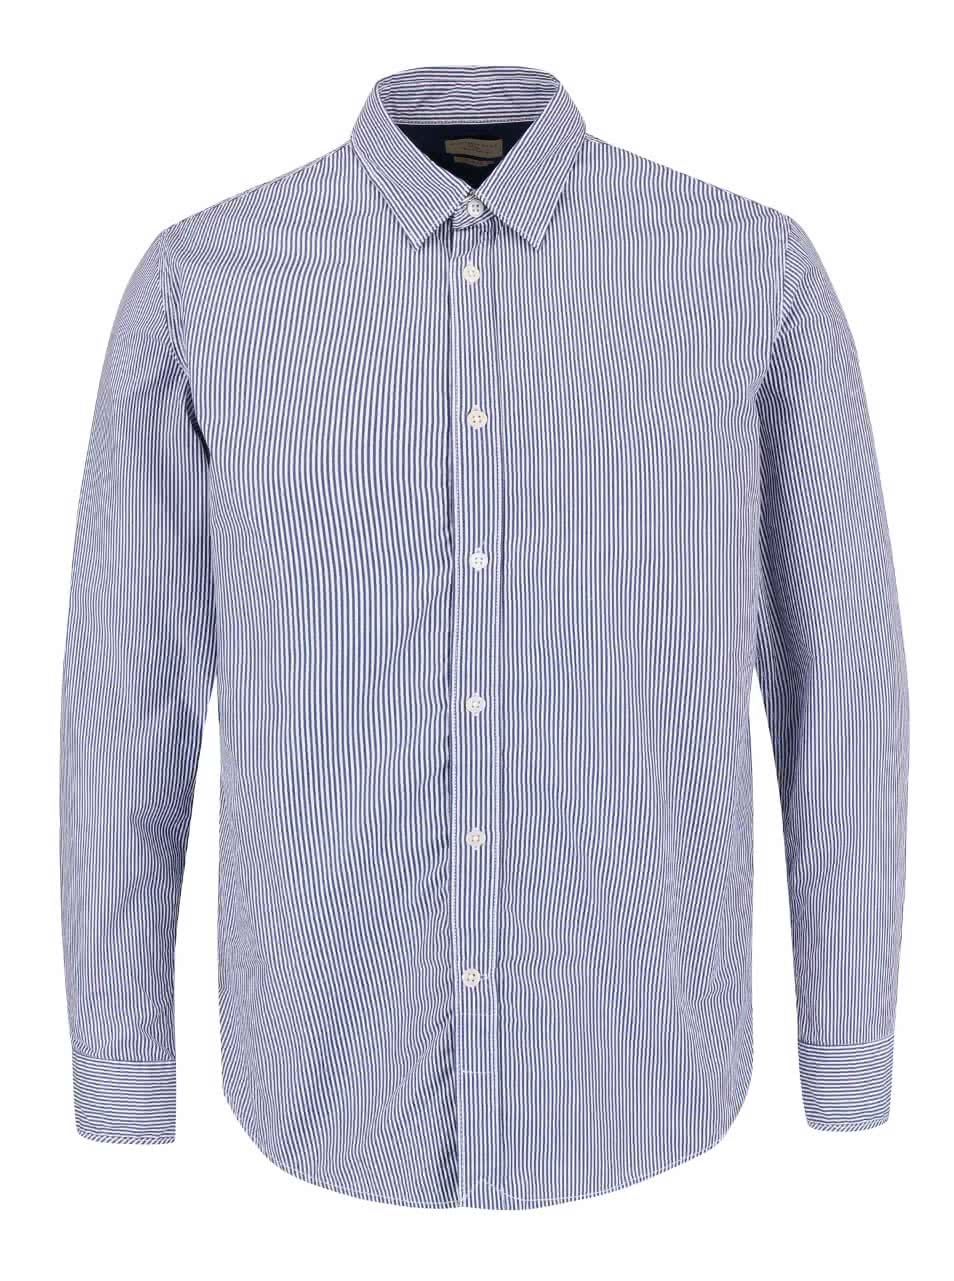 Modro-bílá pruhovaná slim fit košile Selected Homme Filson